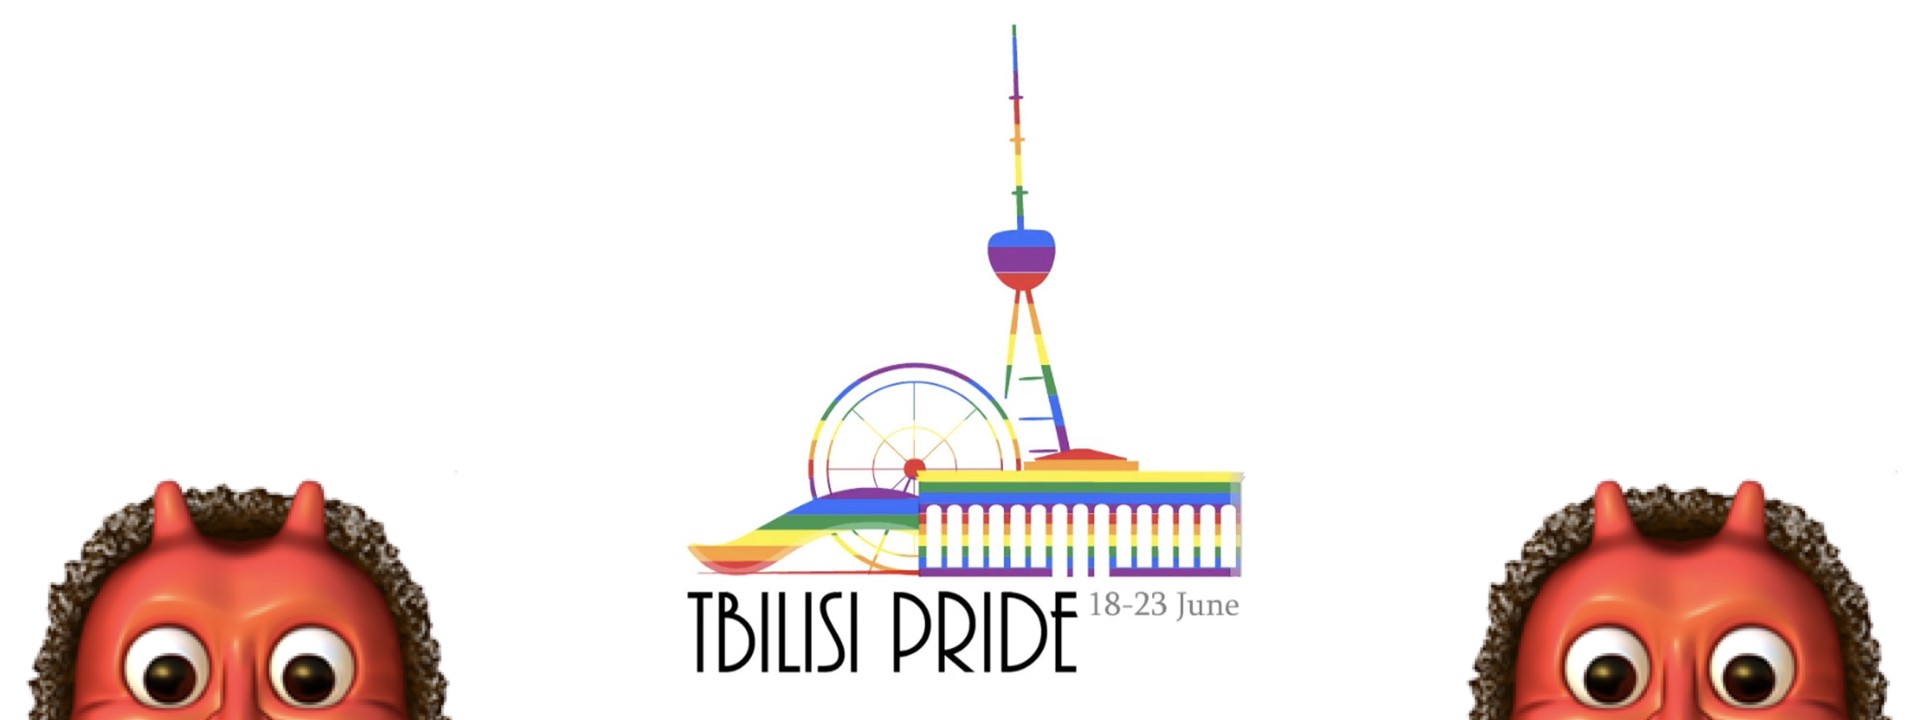 Anti-LGBT Facebook Posts Proliferate in Georgia Before Tbilisi Pride